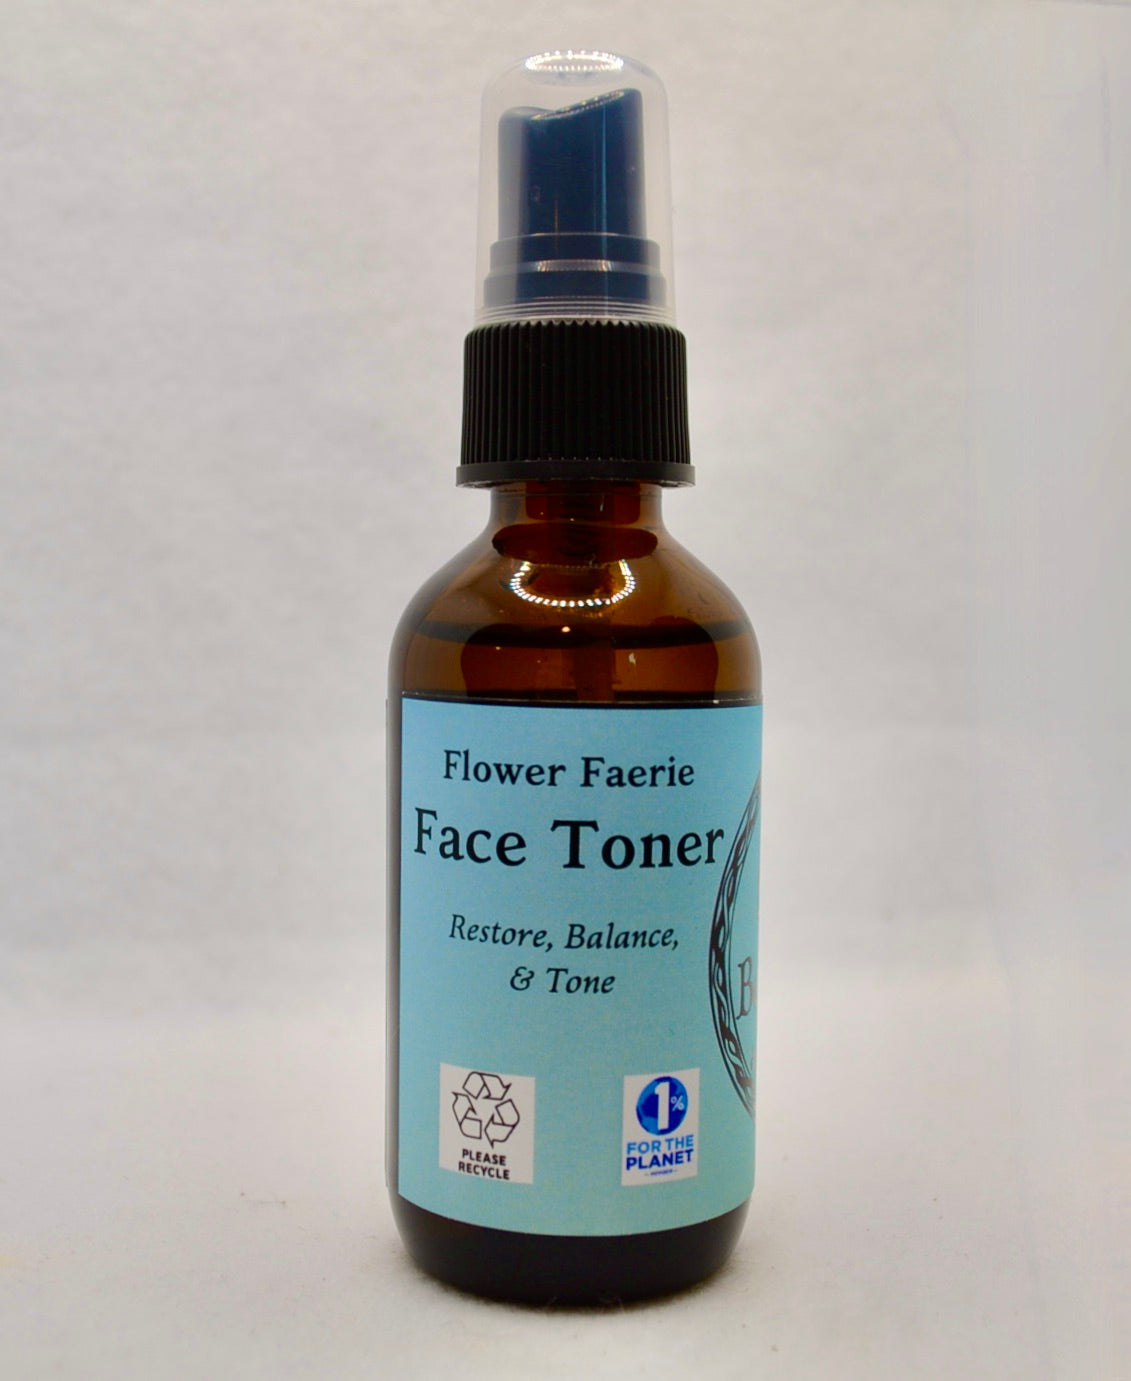 Face Toner: Flower Faerie